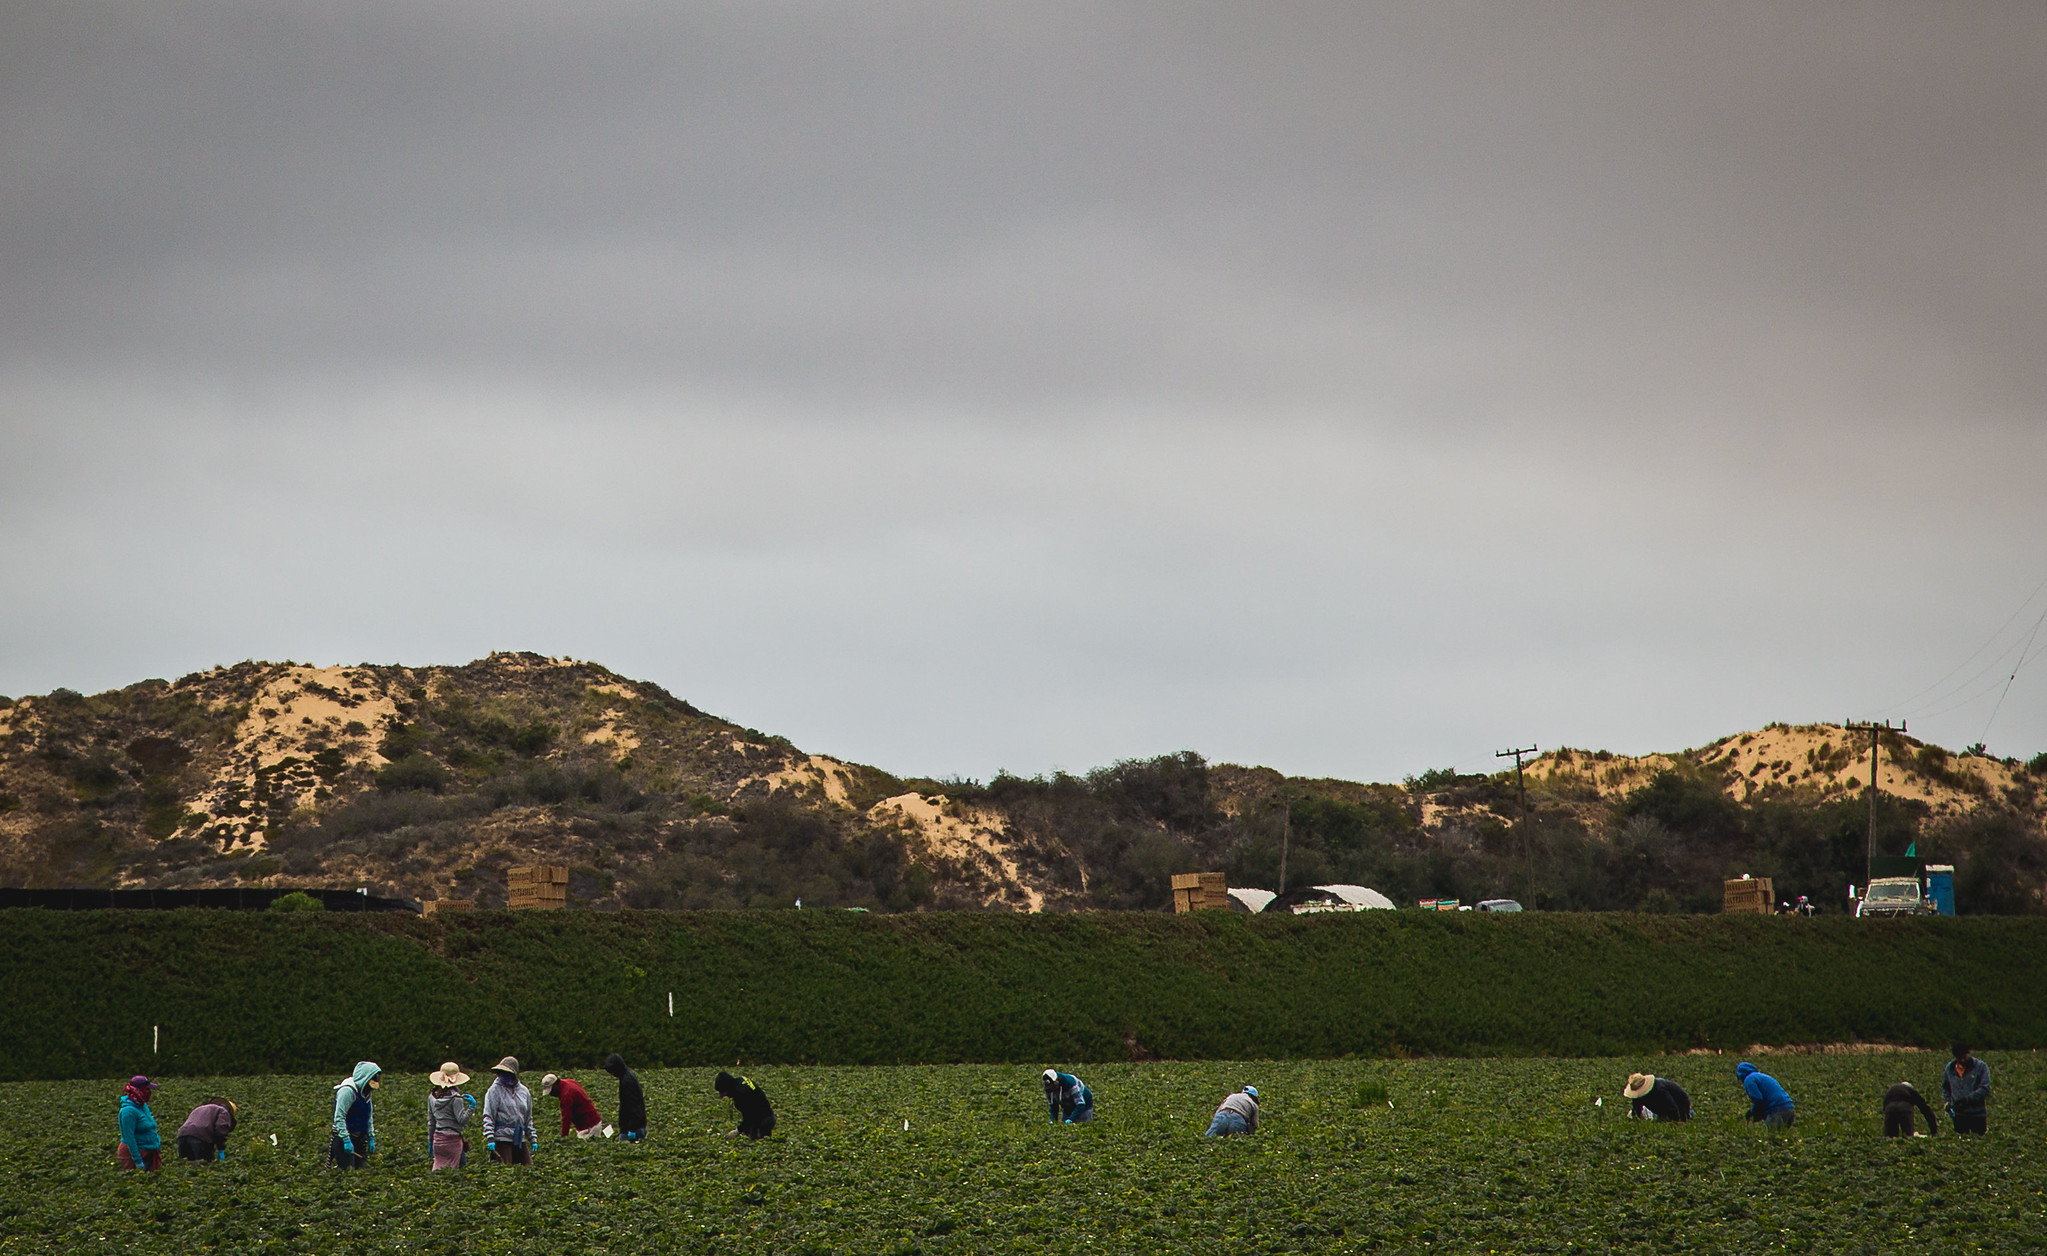 Farm workers in a field in California